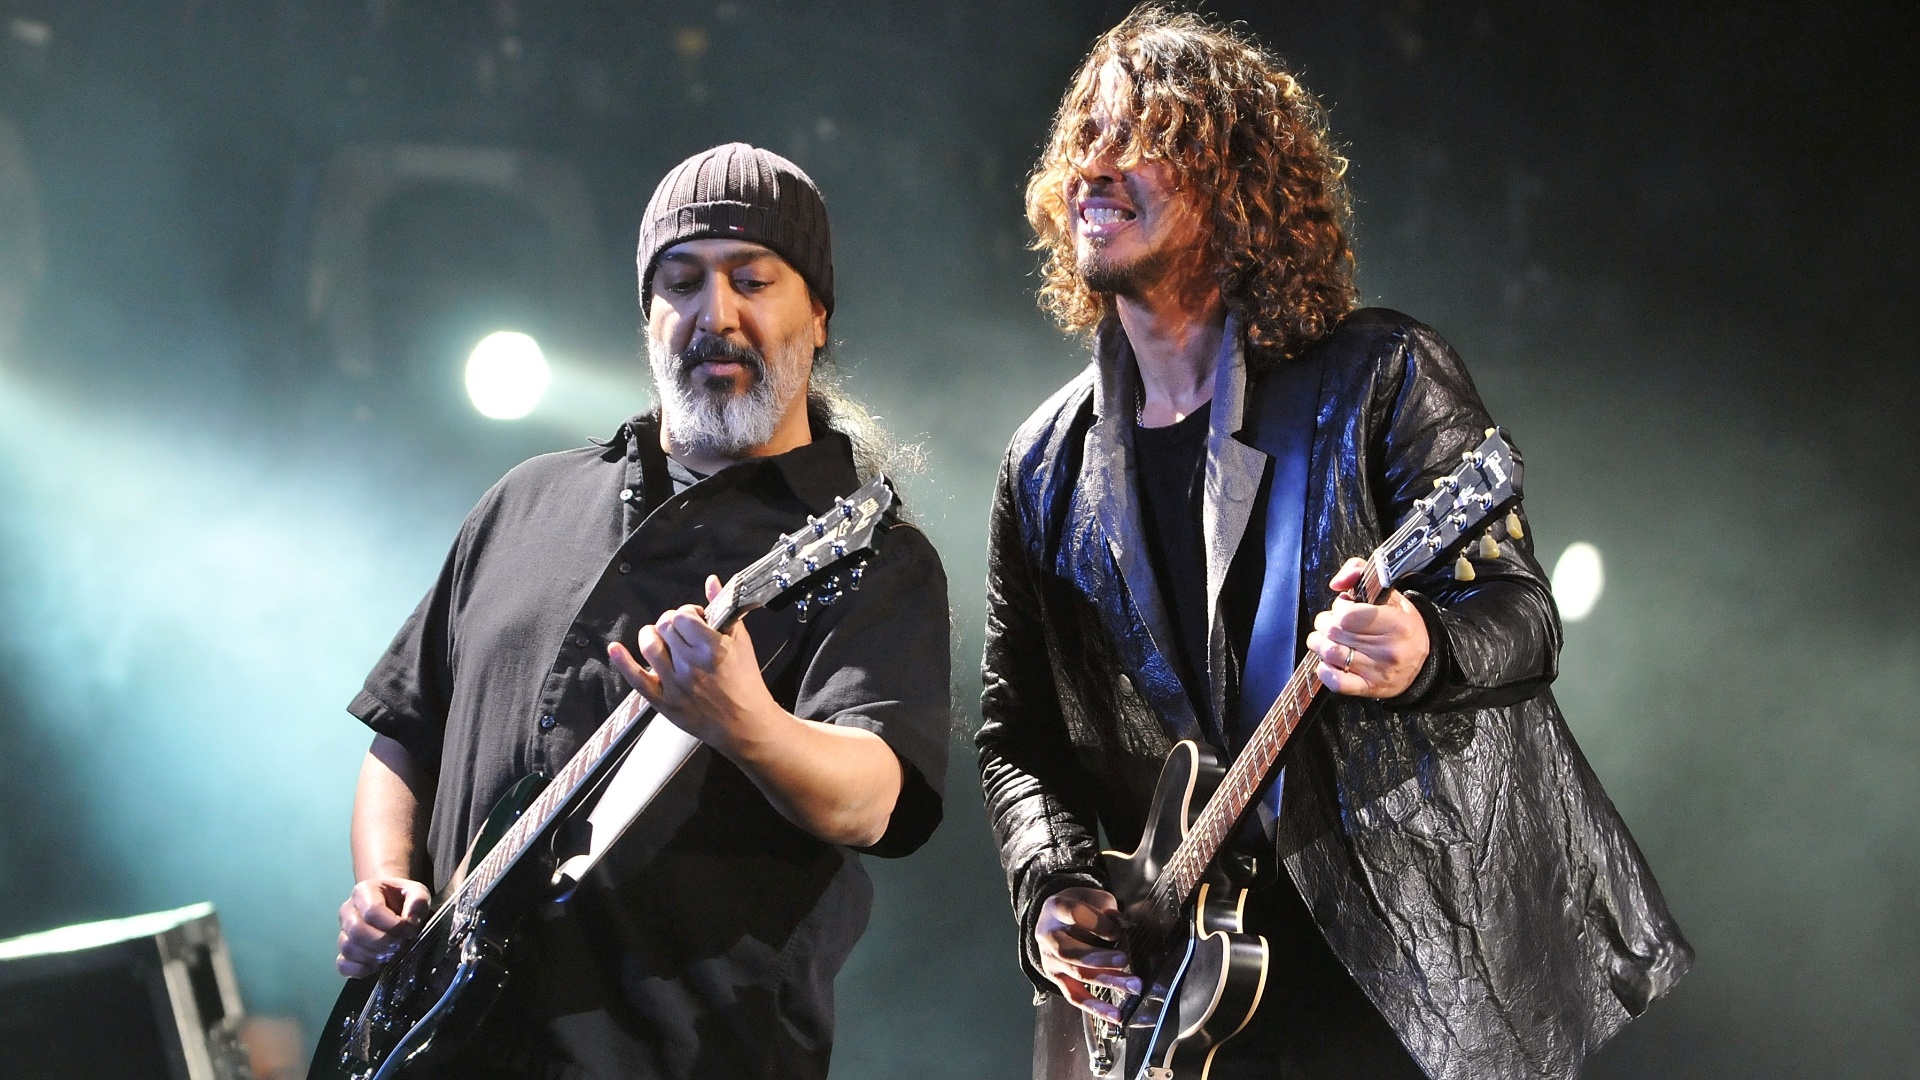 Mate saudade do Soundgarden com ‘Blind Dogs’ ao vivo em novo Blu-ray